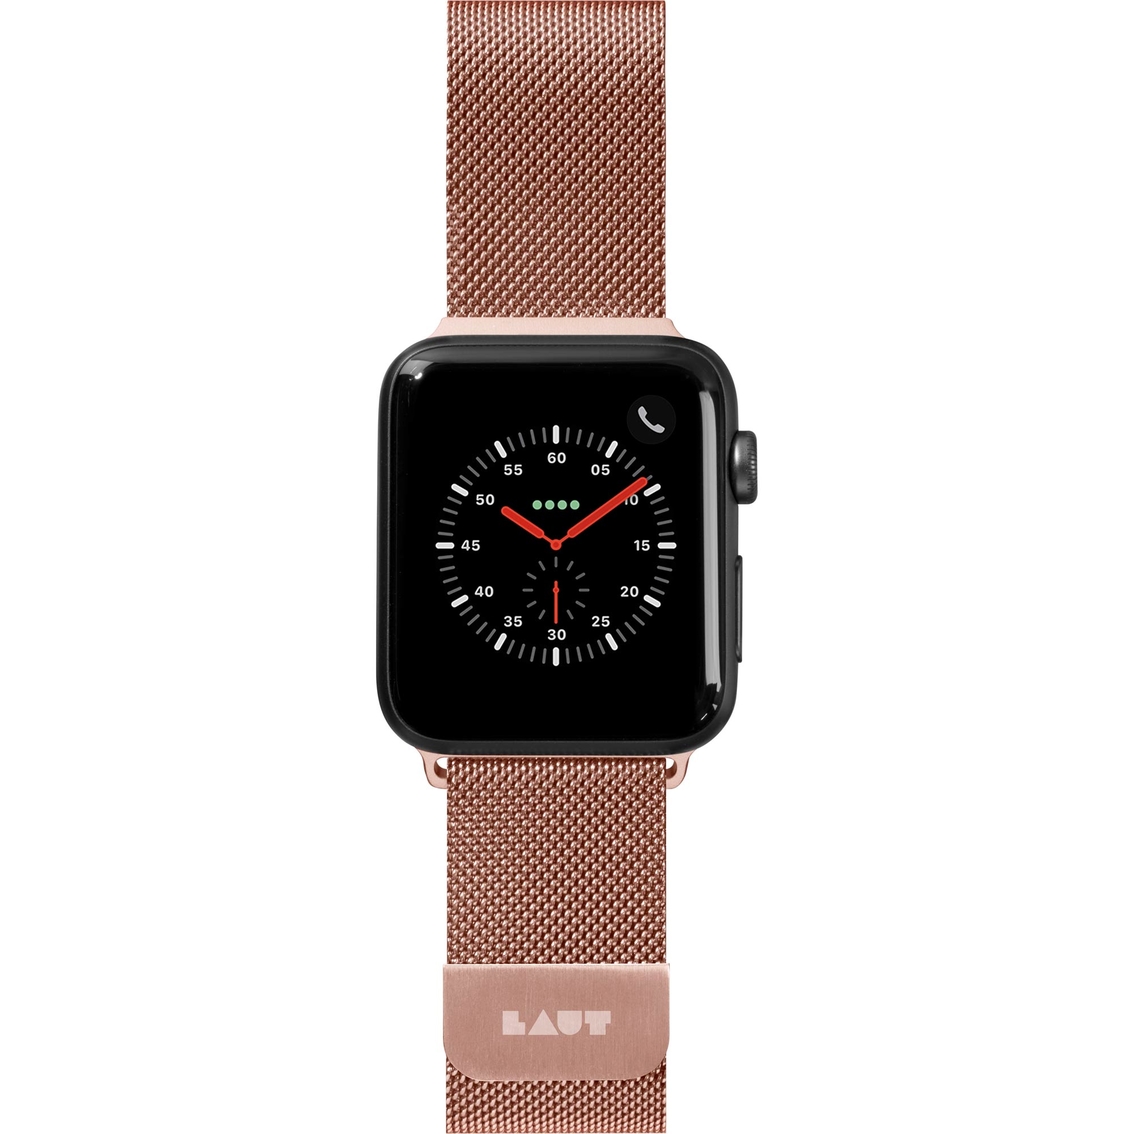 Laut Steel Loop Apple Watch Band - Image 2 of 5